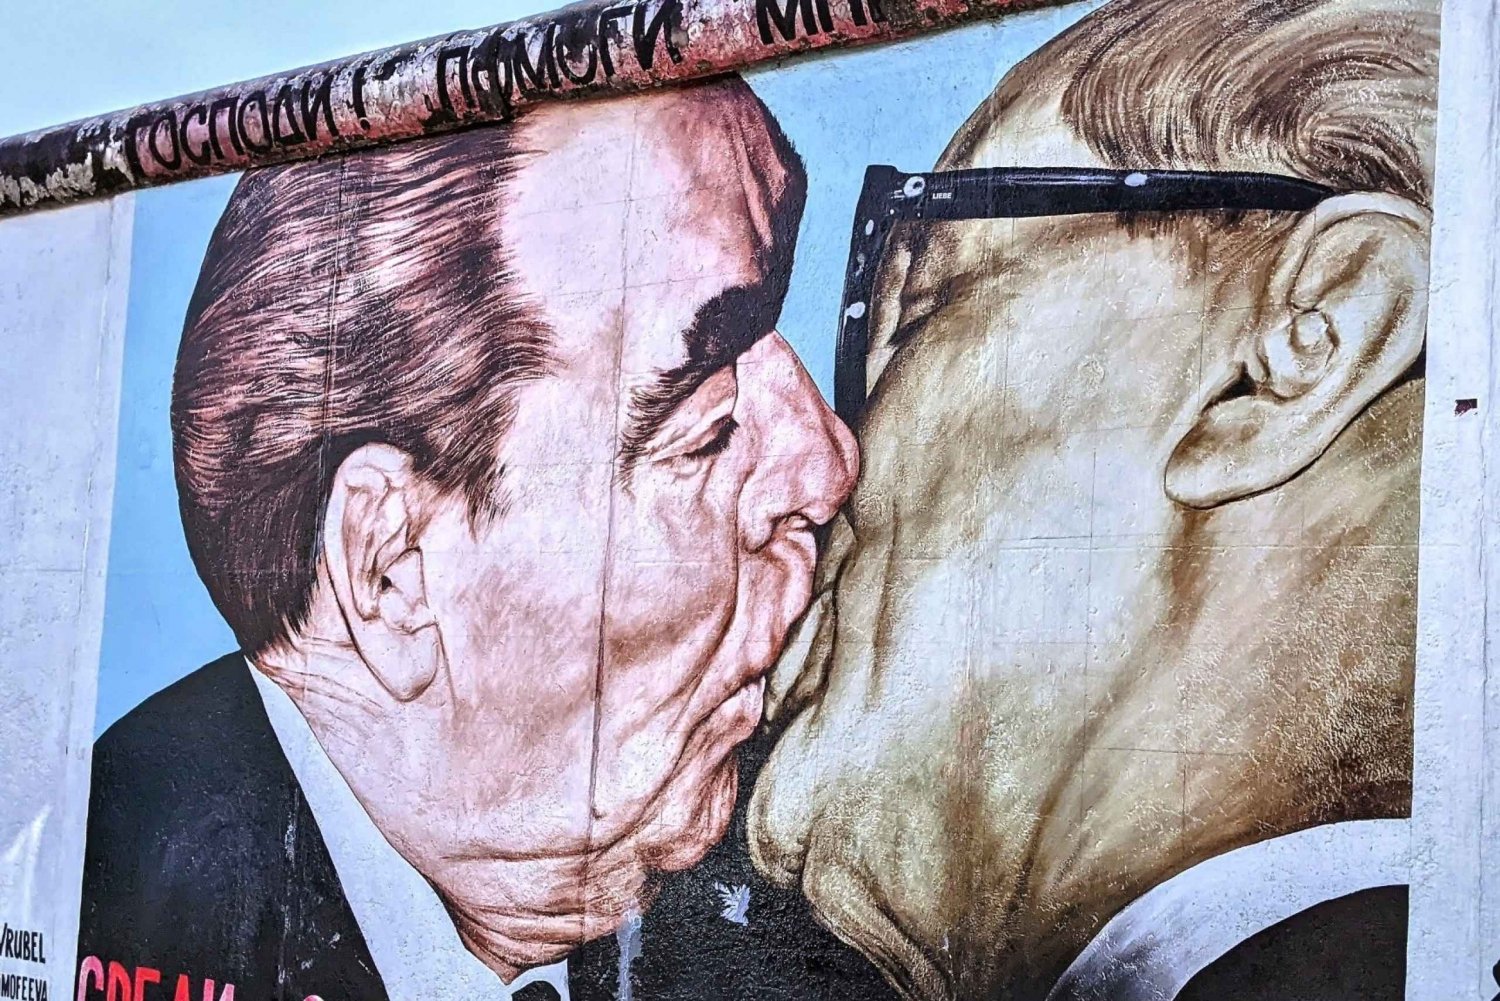 Berlin : Mur de Berlin, visite guidée avec faits et anecdotes